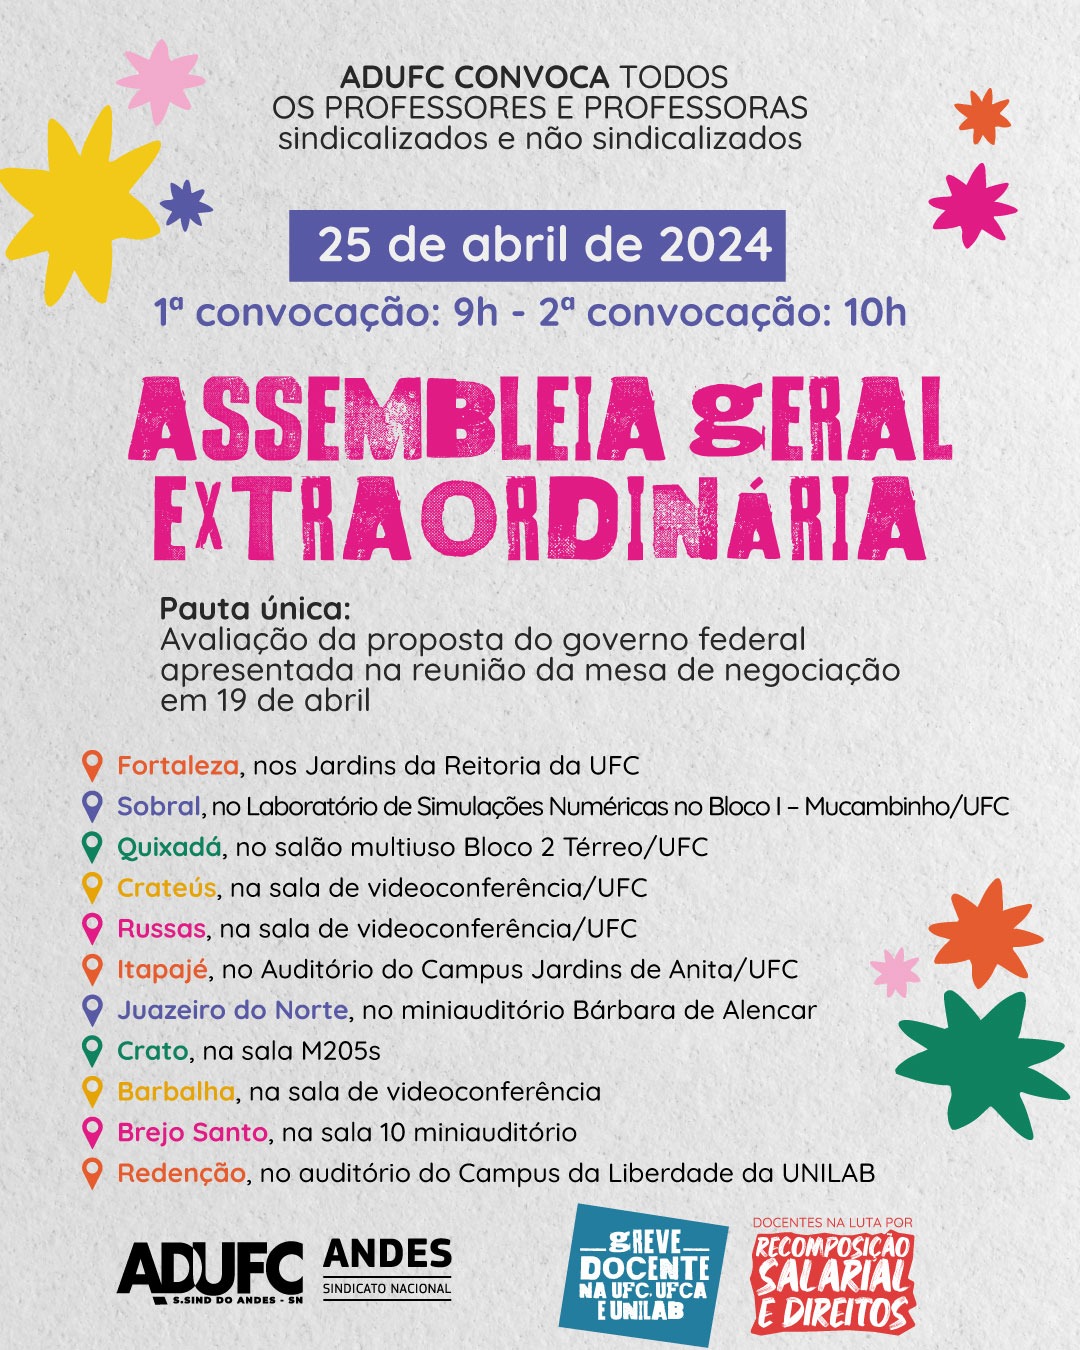 GREVE DA EDUCAÇÃO — ADUFC convida docentes para Assembleia Geral amanhã (25) sobre avaliação da proposta de reajuste do governo